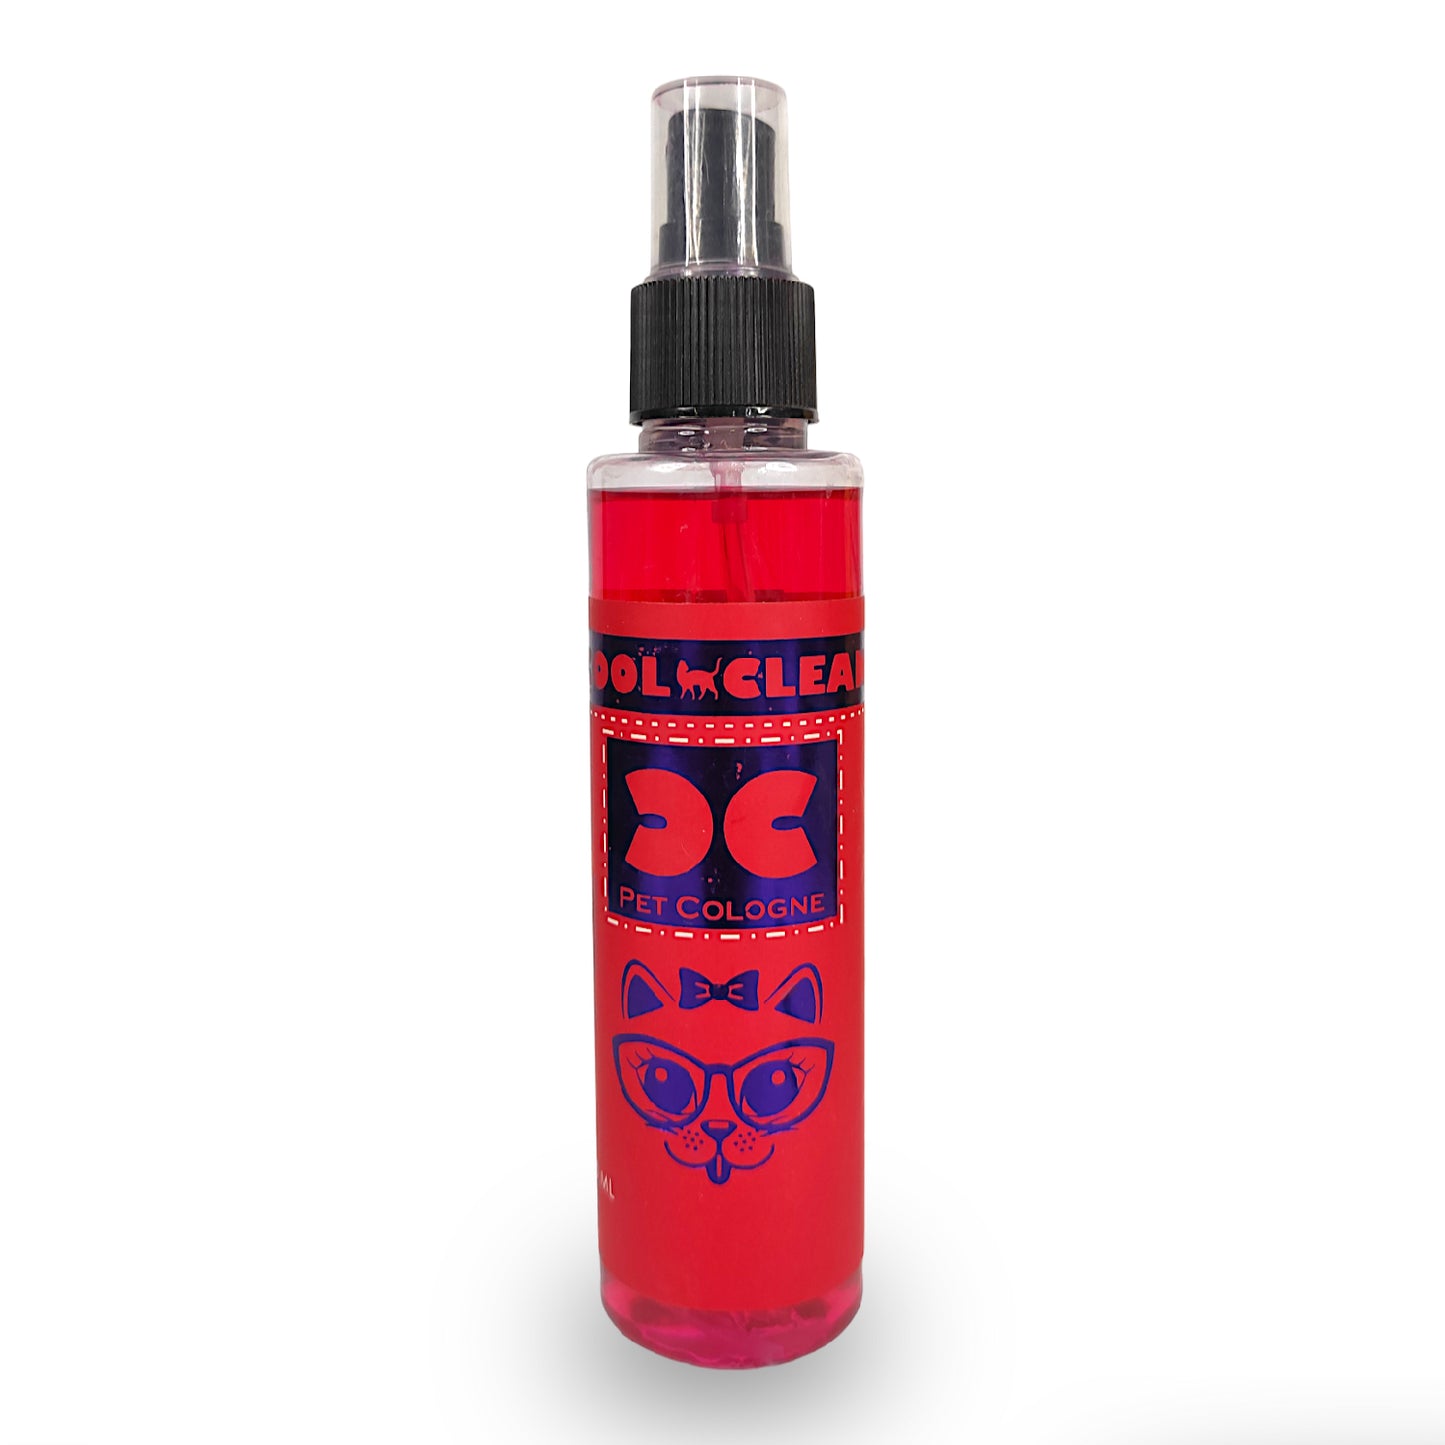 Pet Cologne - Perfume - Body Spray